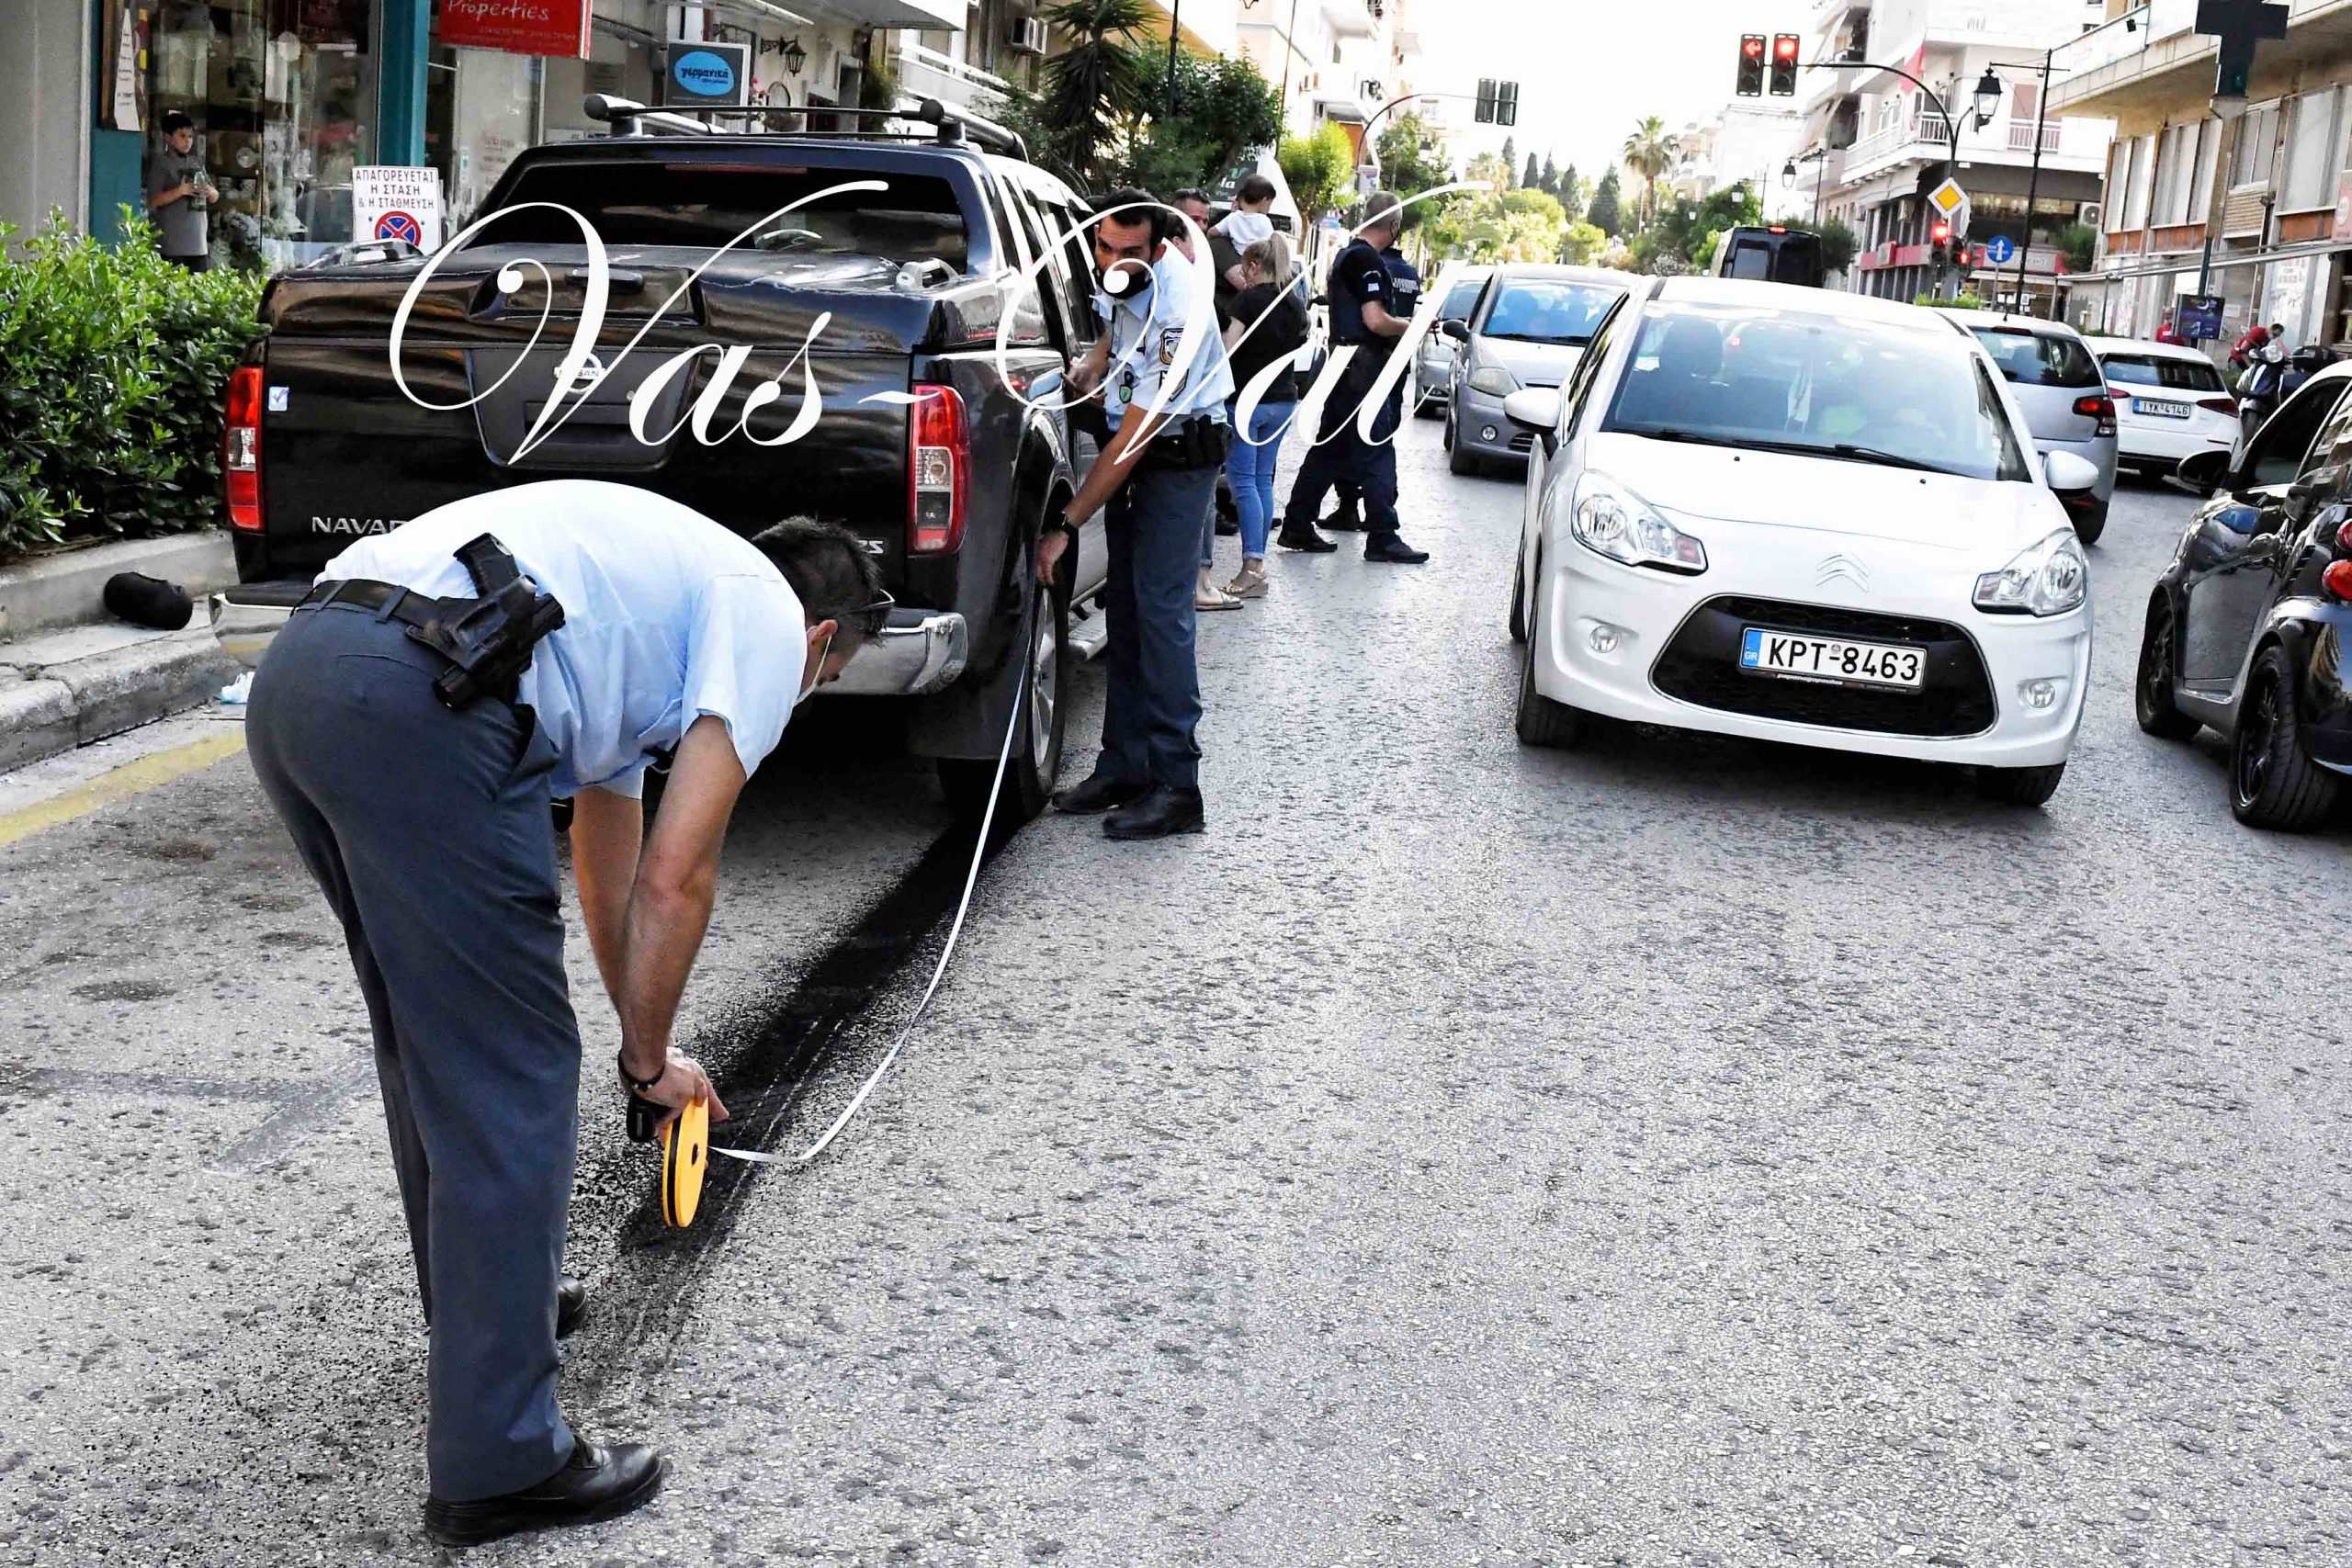 Κόρινθος - Βίντεο ντοκουμέντο: Οδηγός παθαίνει επιληπτική κρίση και παίρνει παραμάζωμα παρκαρισμένα αυτοκίνητα - ΚΟΡΙΝΘΙΑ